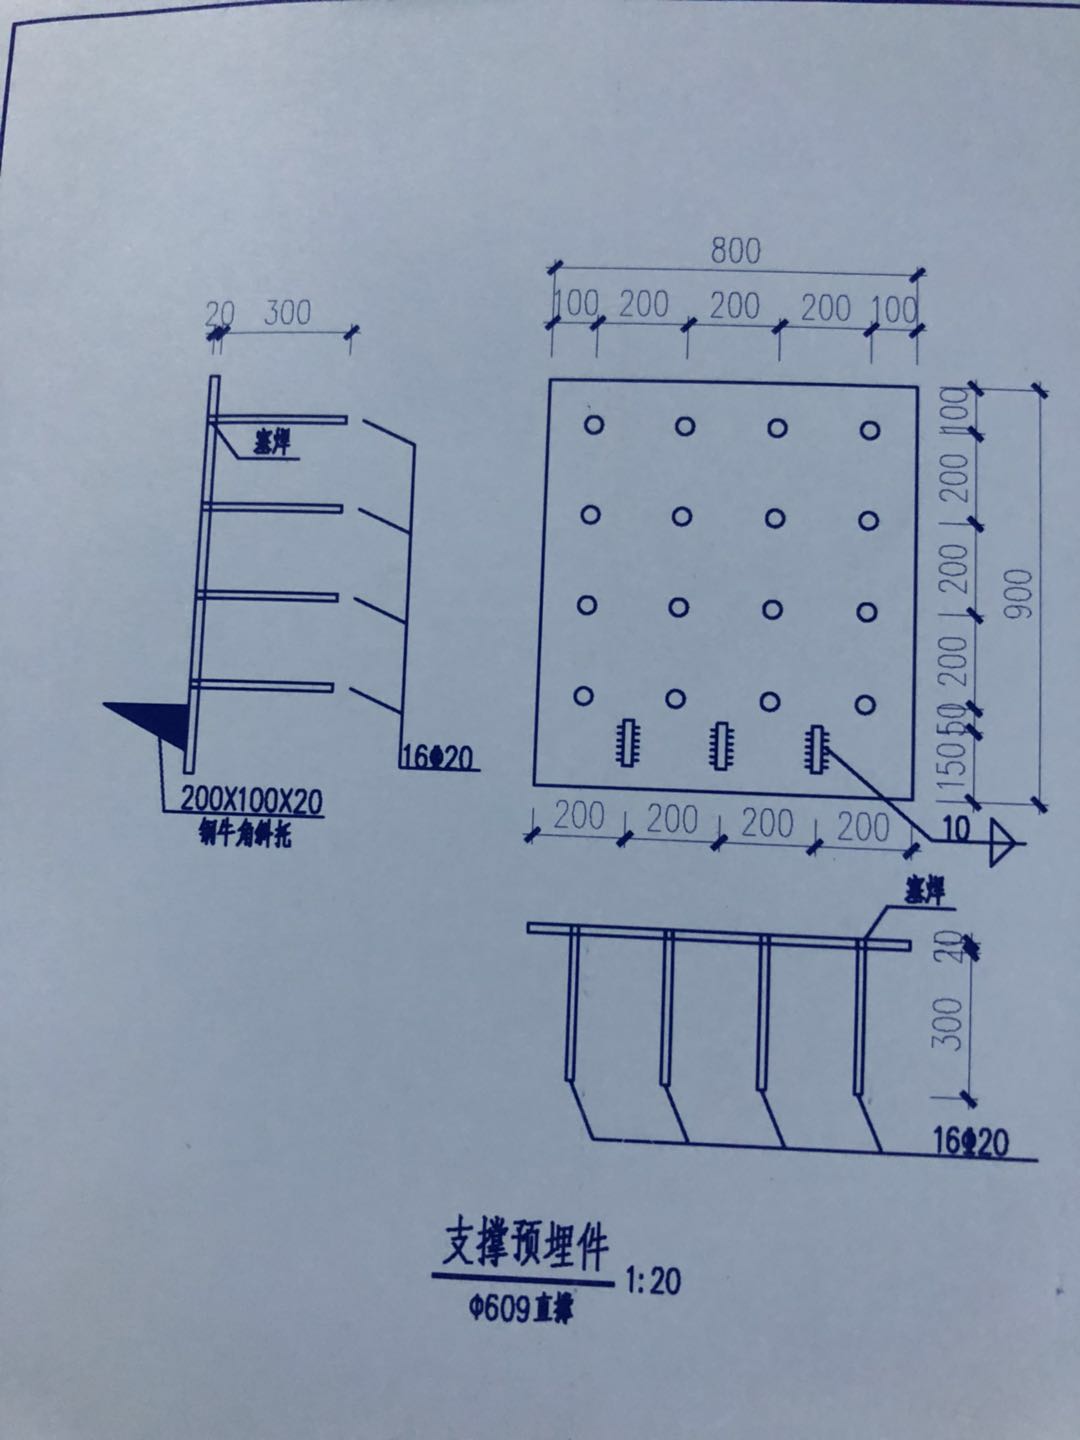 杭州地铁7号线工程施工总承包土建6工区袋装预埋钢板询价采购公告